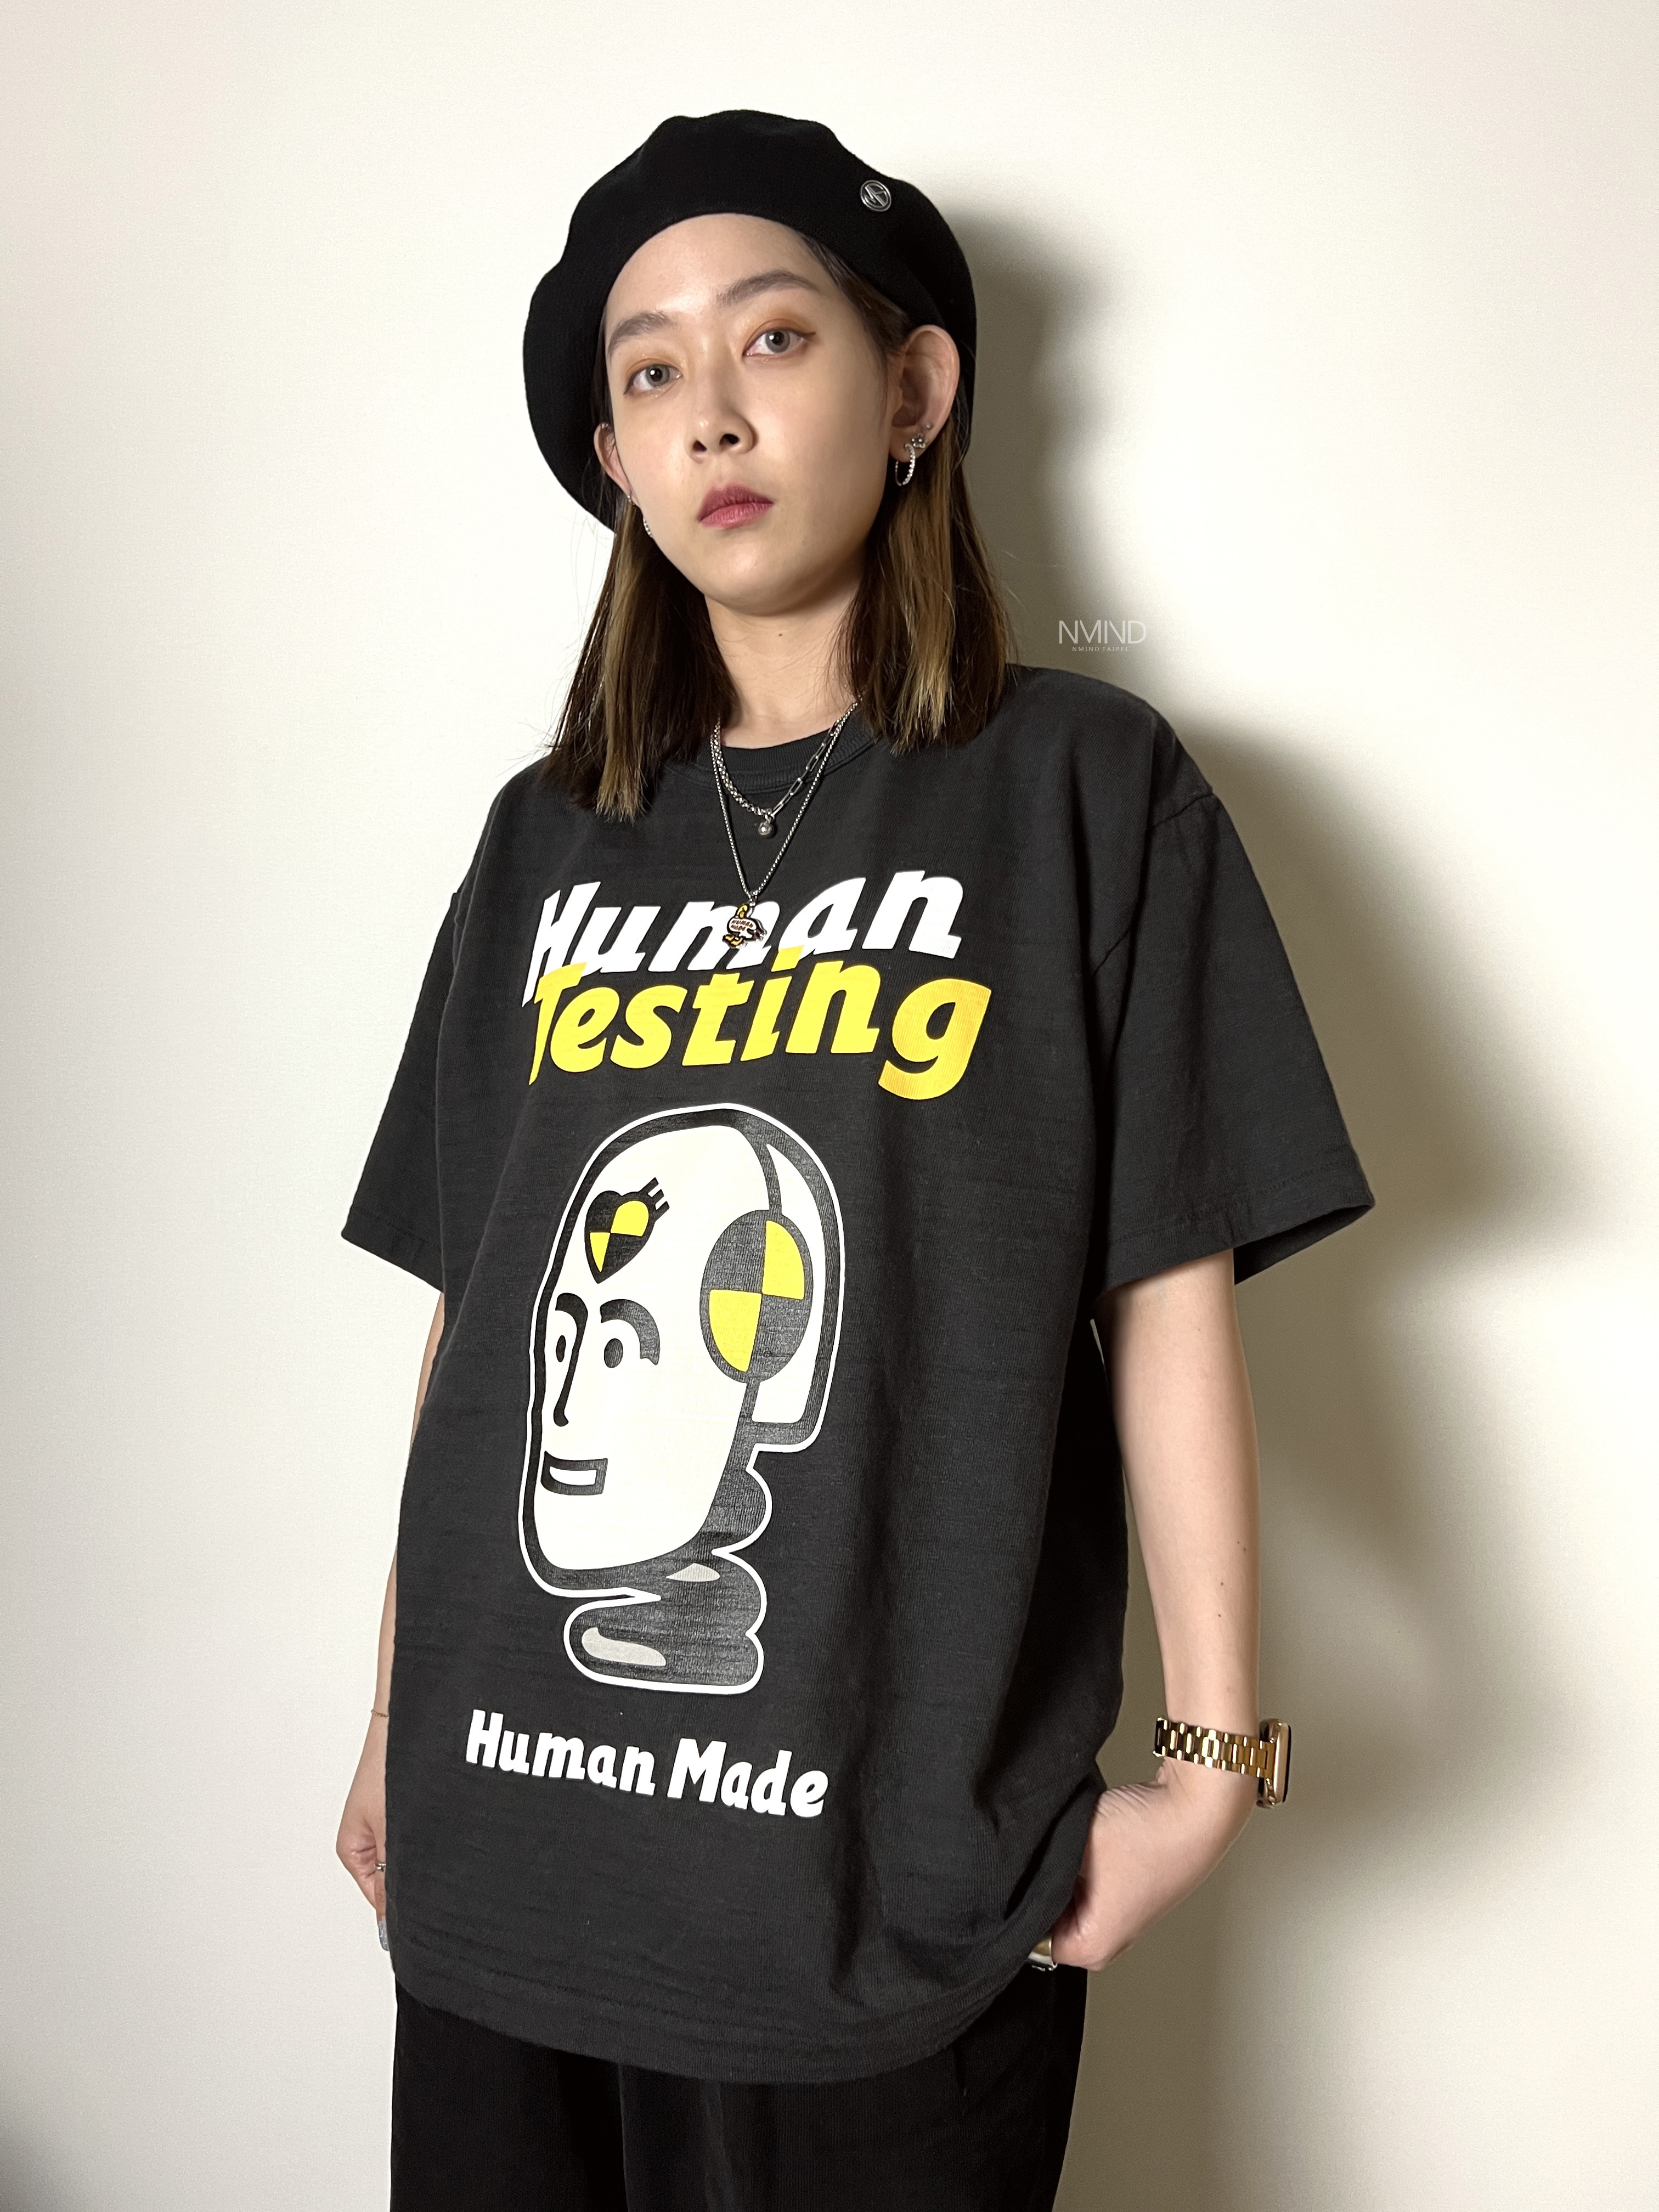 即購入okstreet★レア/希少サイズ★ human made HUMAN TESTING Tシャツ